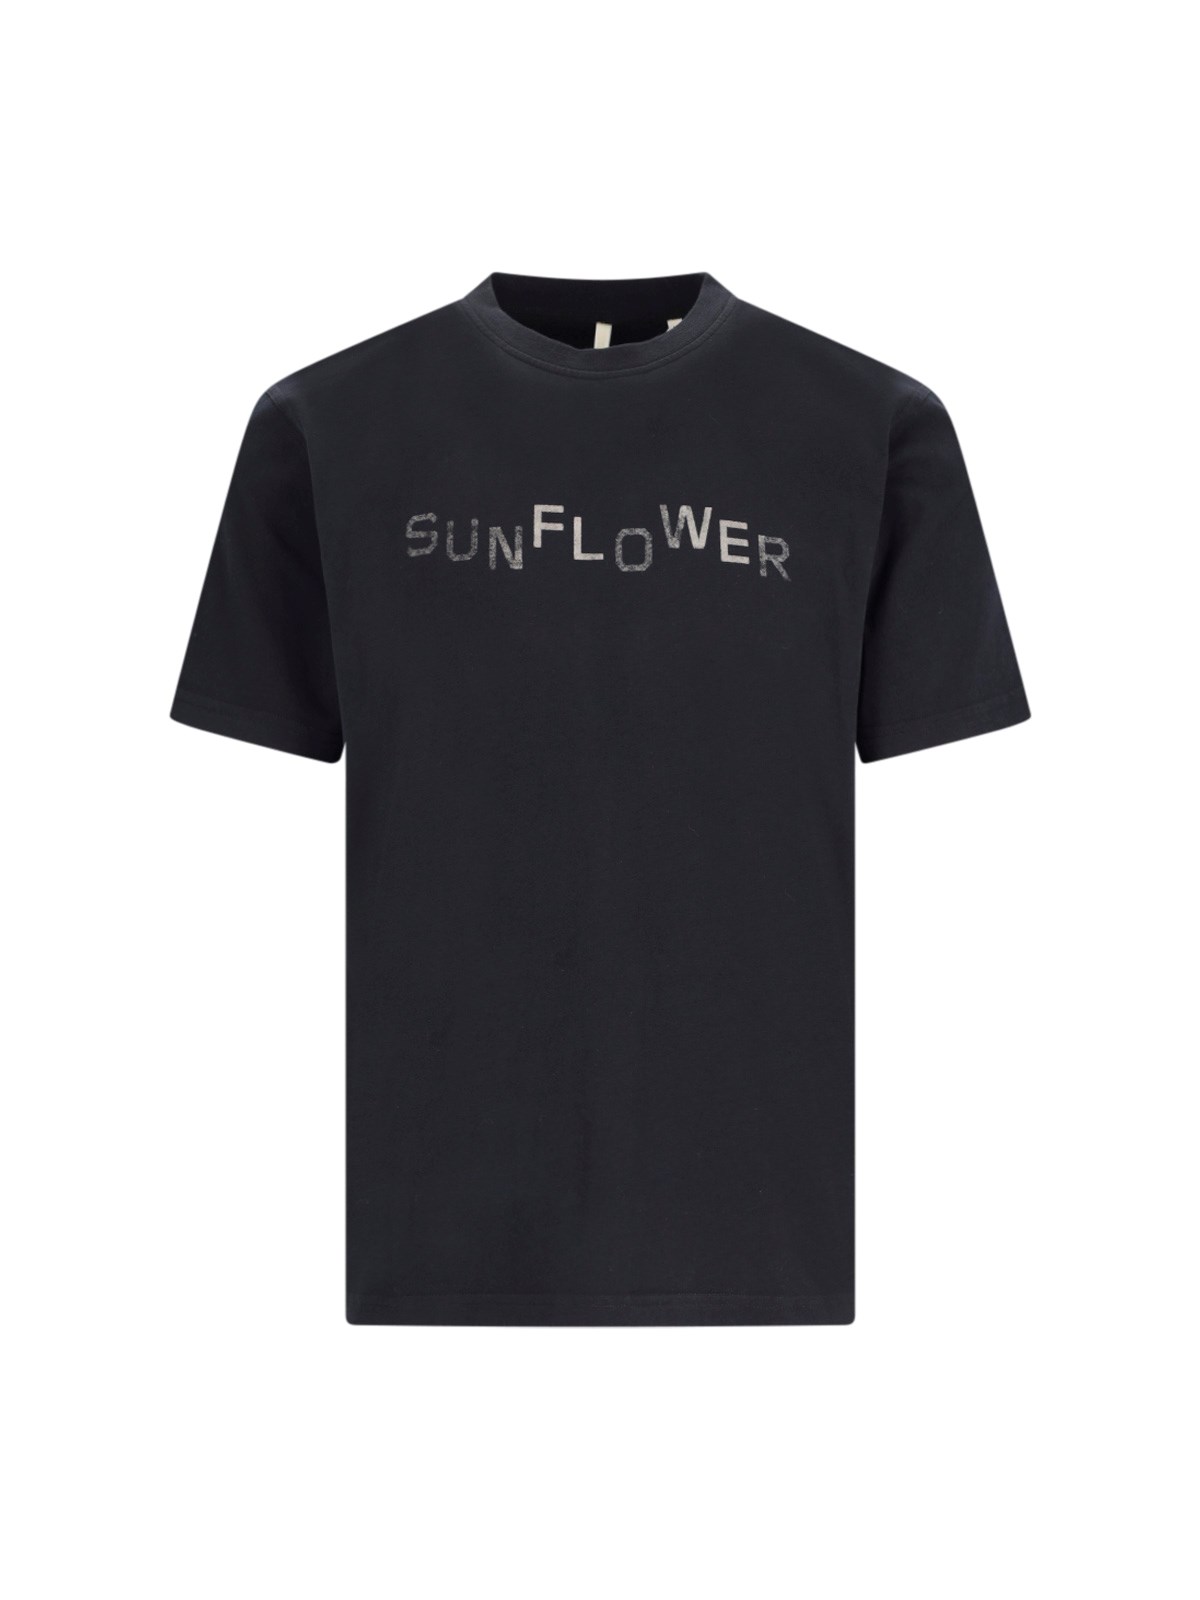 Sunflower T-shirt In Black  